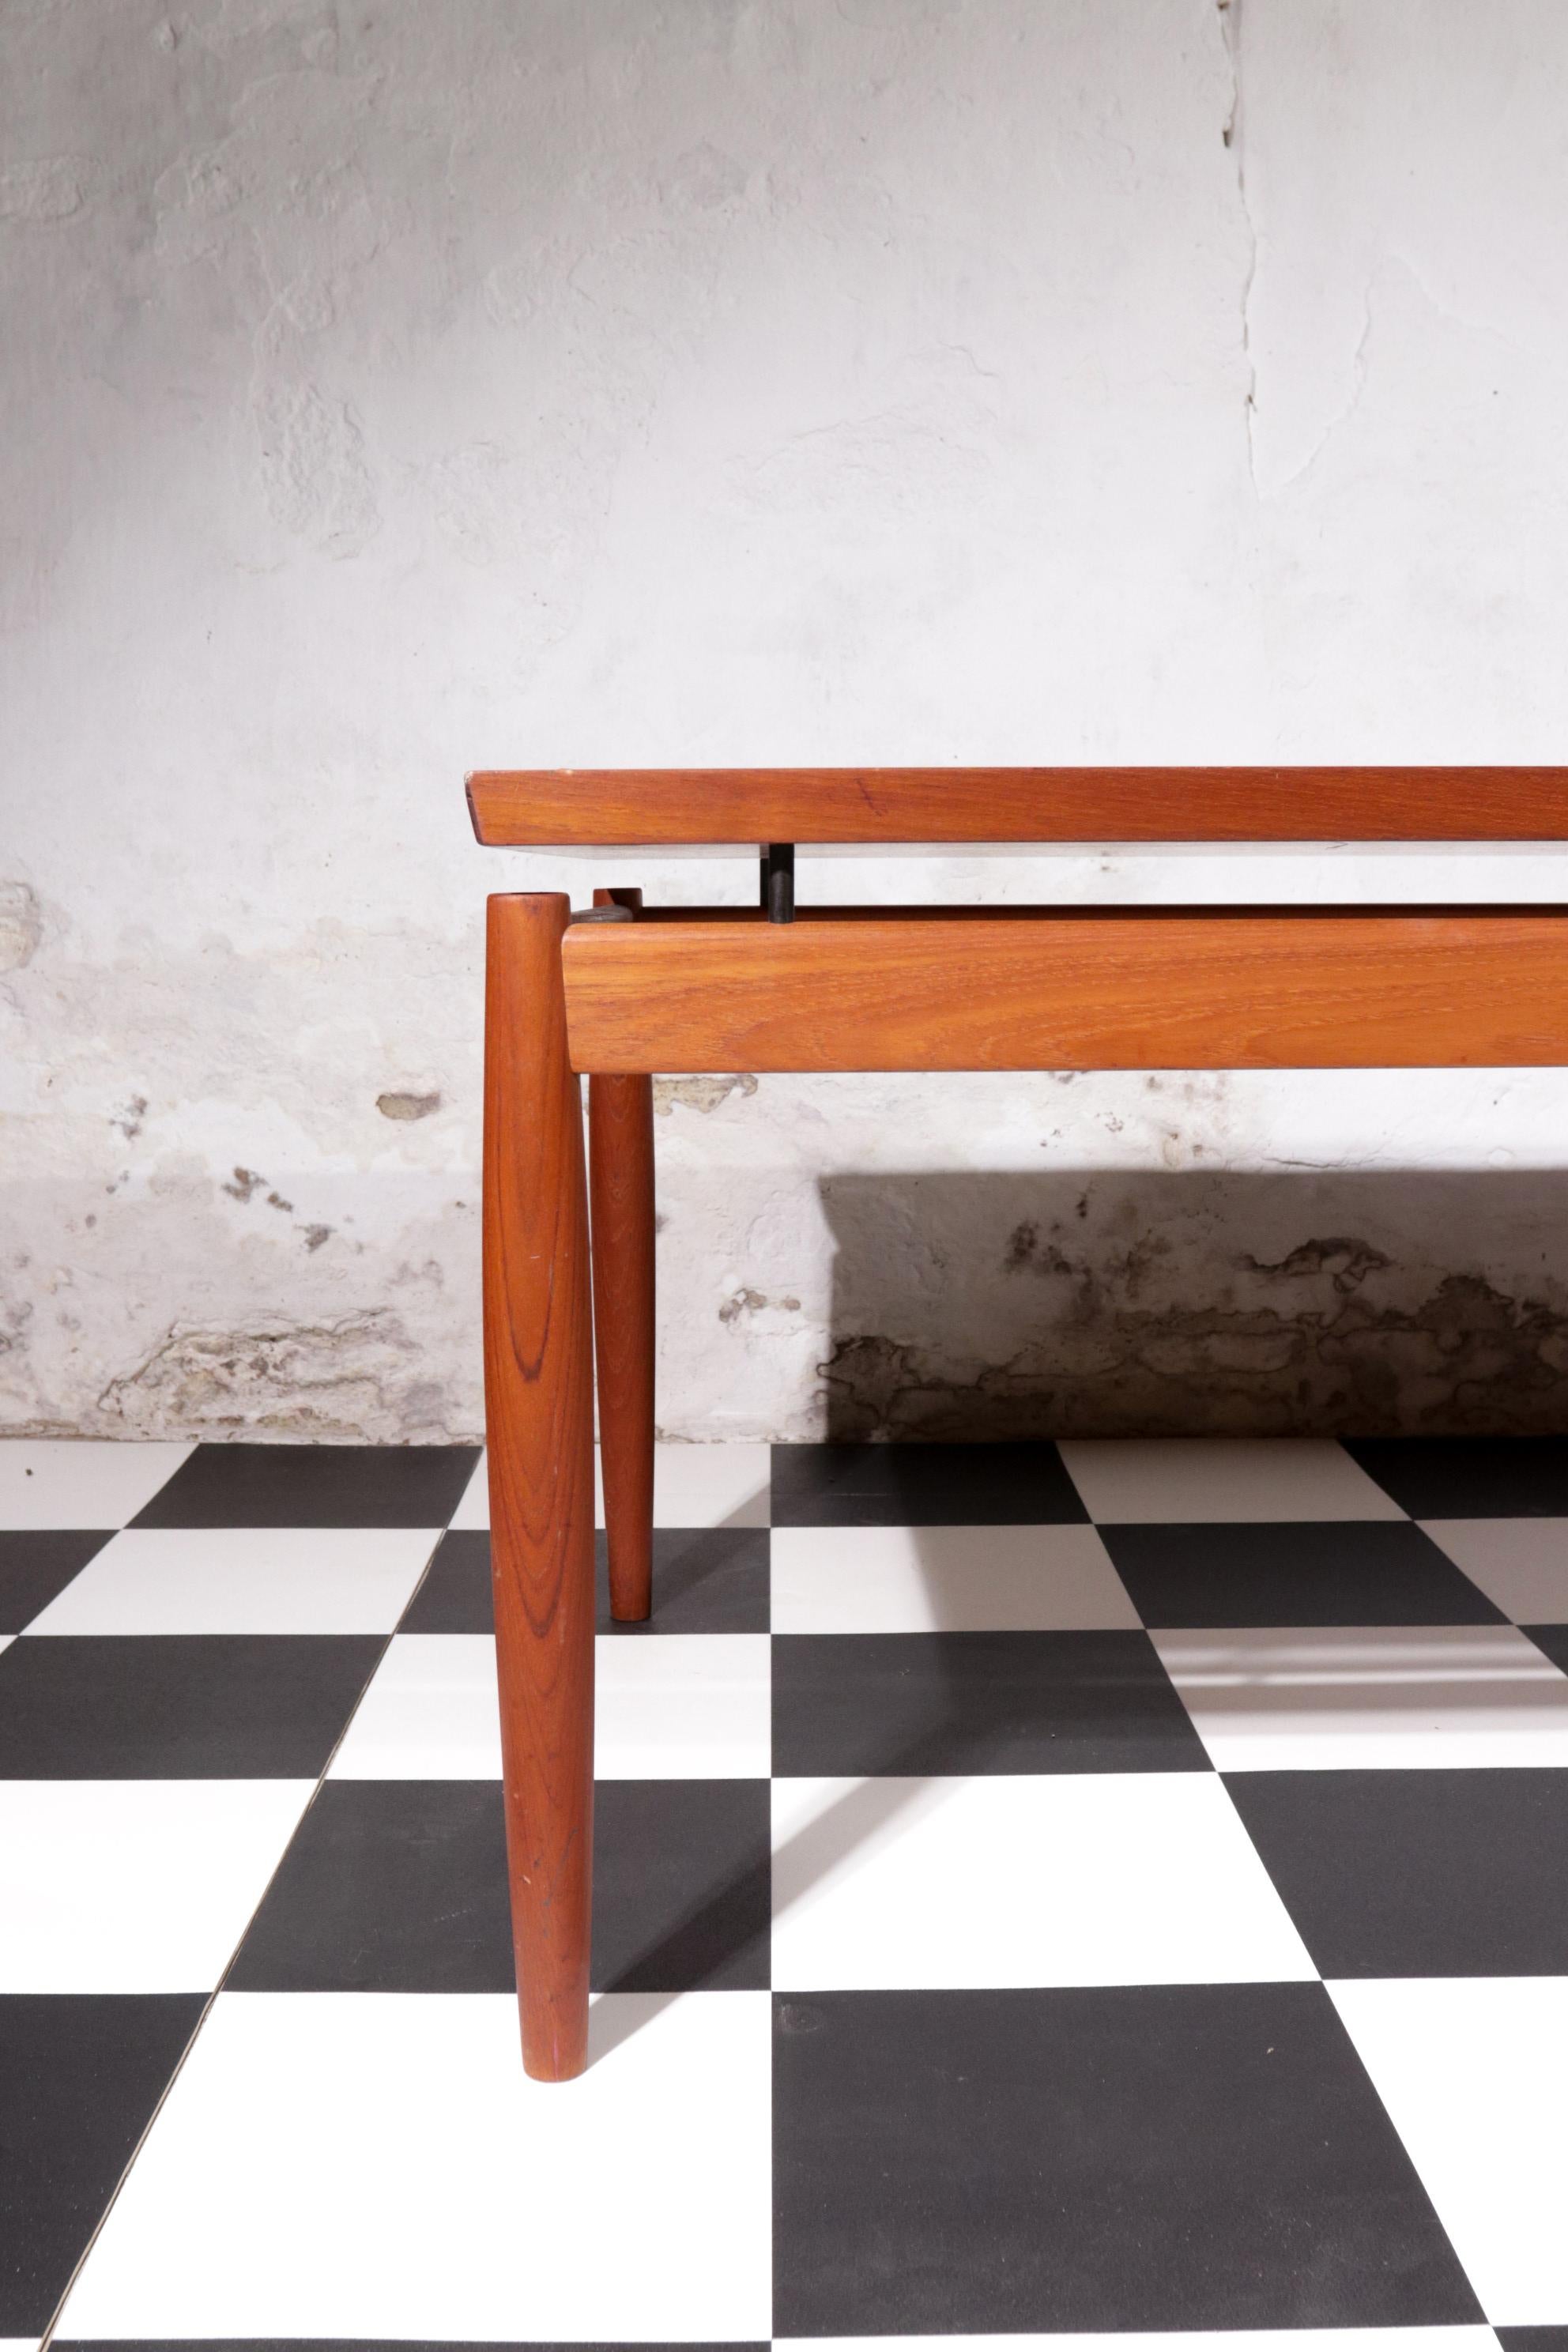 Mid-20th Century Danish Design Grete Jalk Sofa Table, Model 622 / 54 Teak France & Son, 1960s For Sale